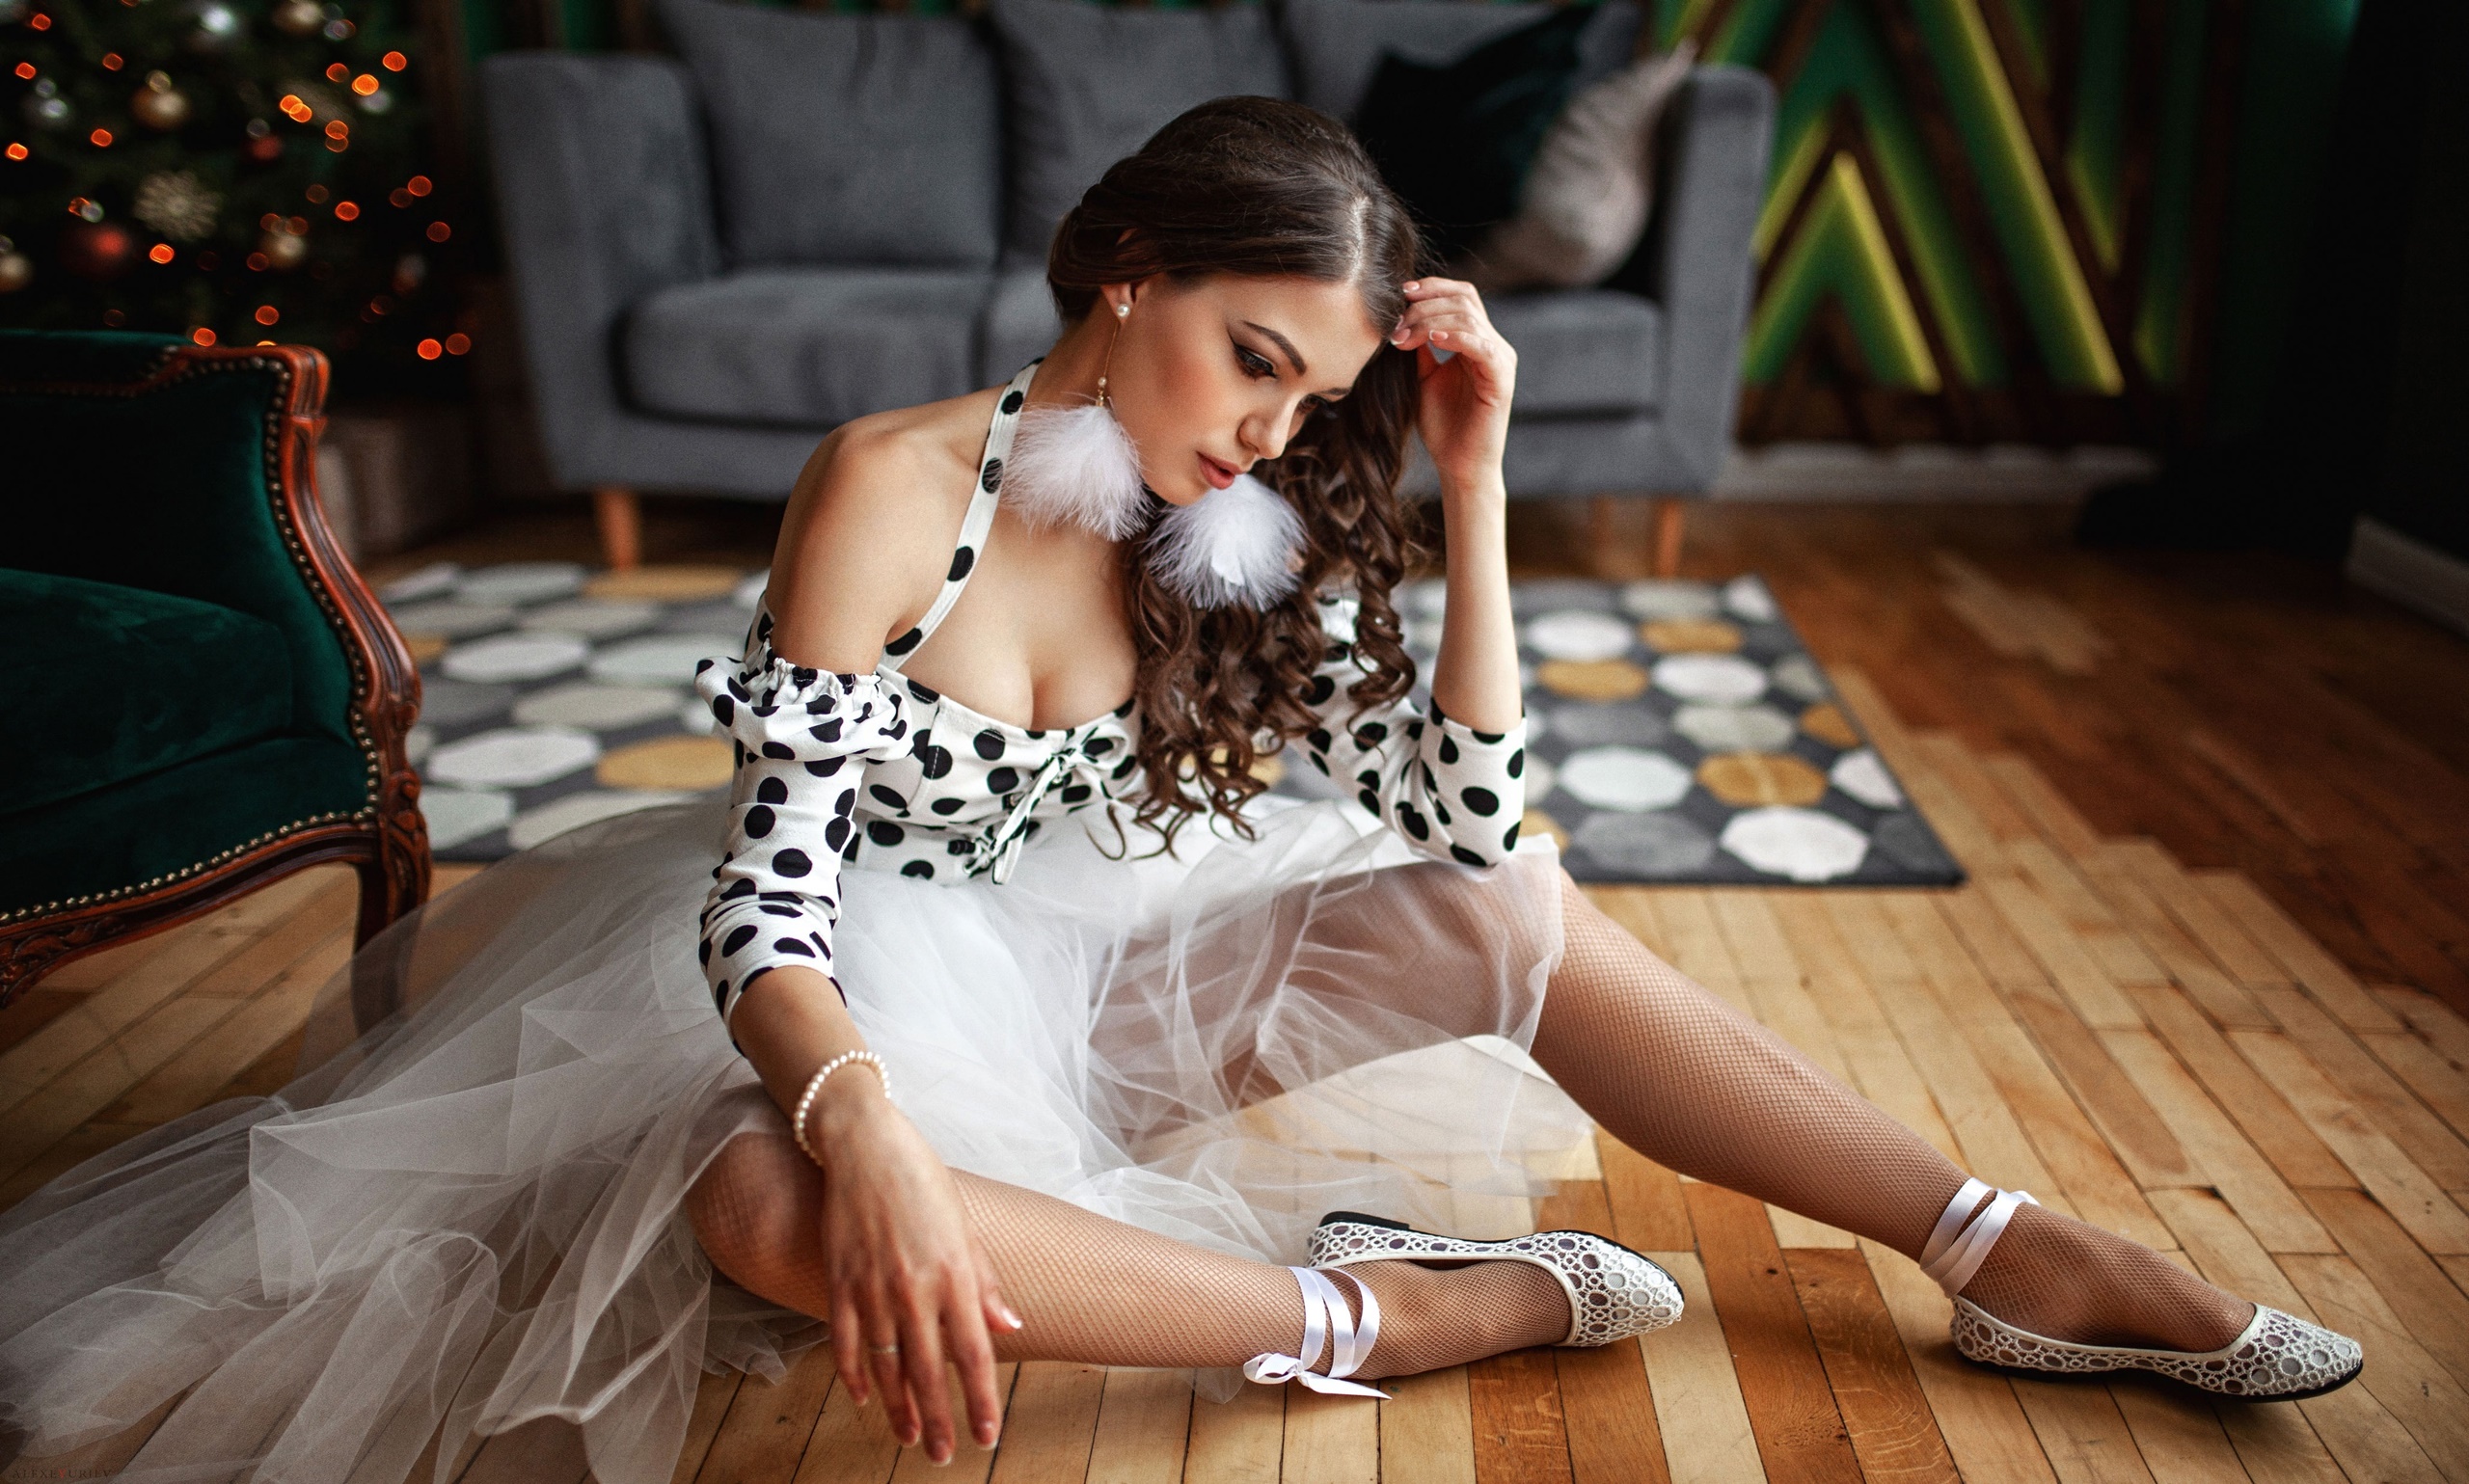 Alexey Yuryev Women Model Sitting On The Floor Women Indoors 2560x1539